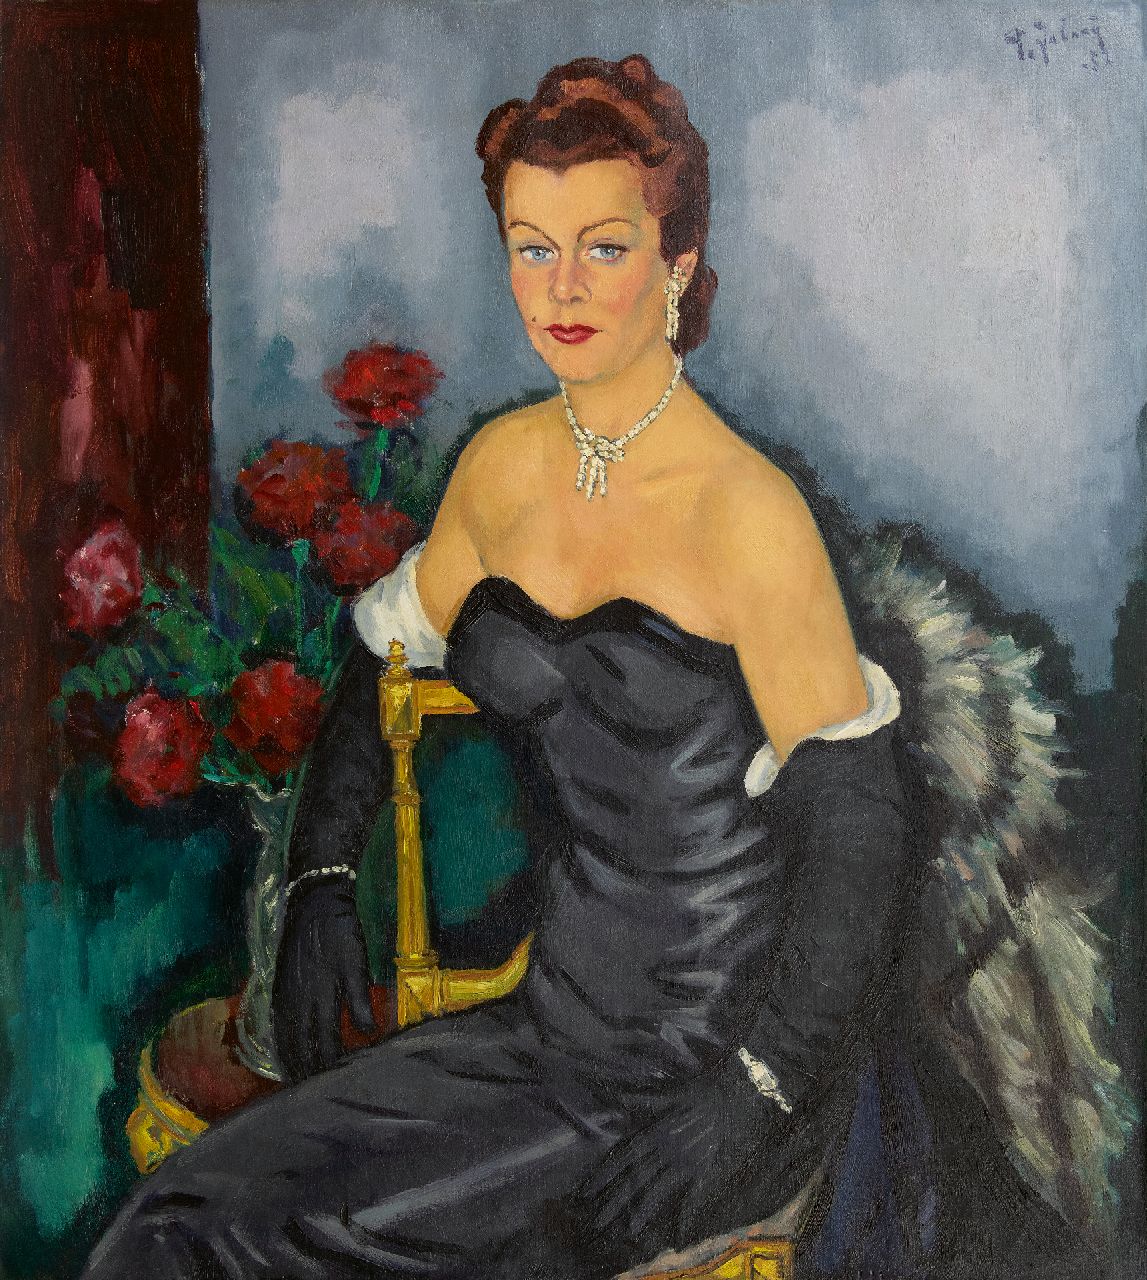 Pleun Jabaaij | Portret van een vrouw in avondkleding, olieverf op doek, 100,0 x 99,8 cm, gesigneerd r.b. en gedateerd '52